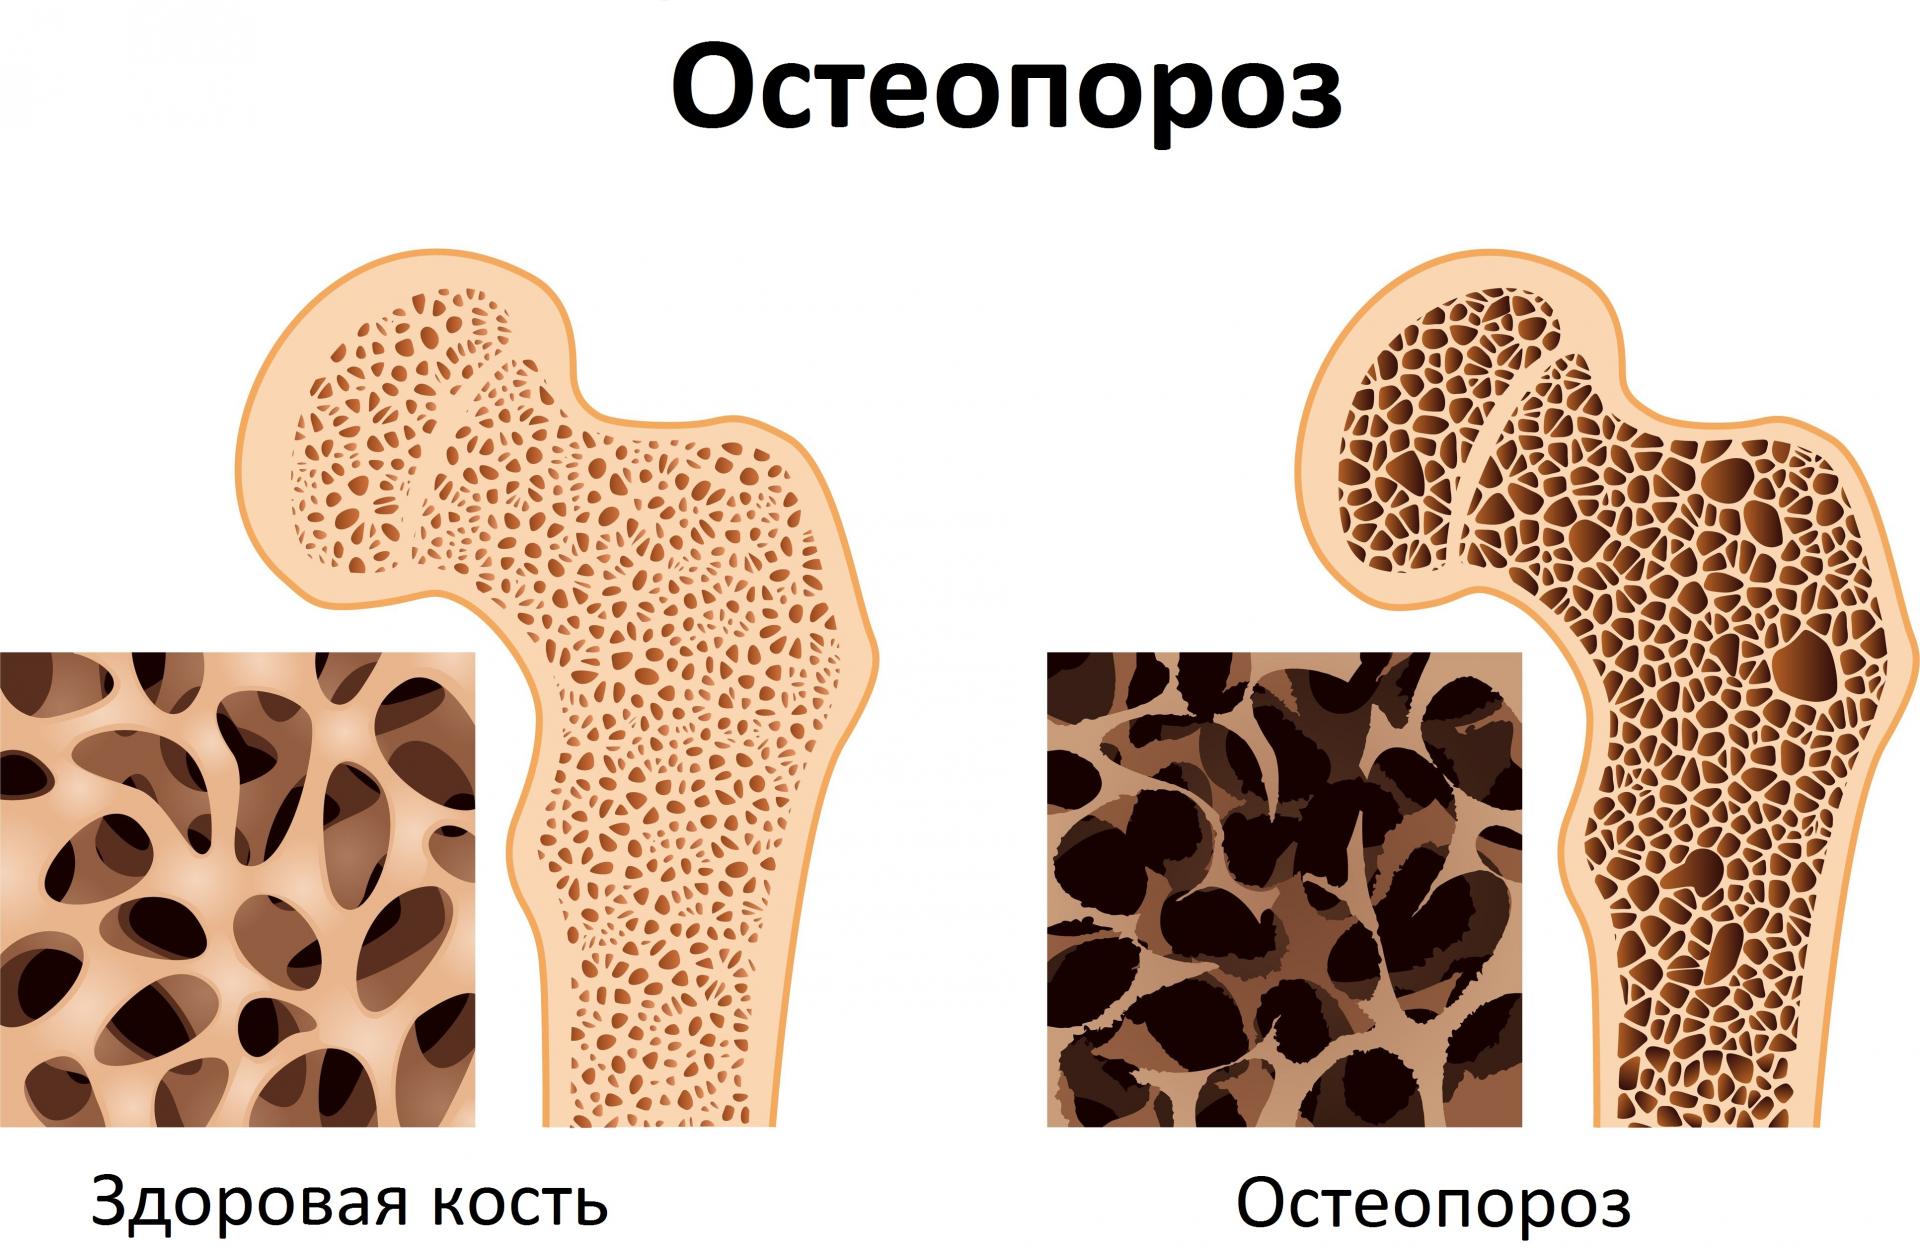 Найдено действенное народное средство от остеопороза